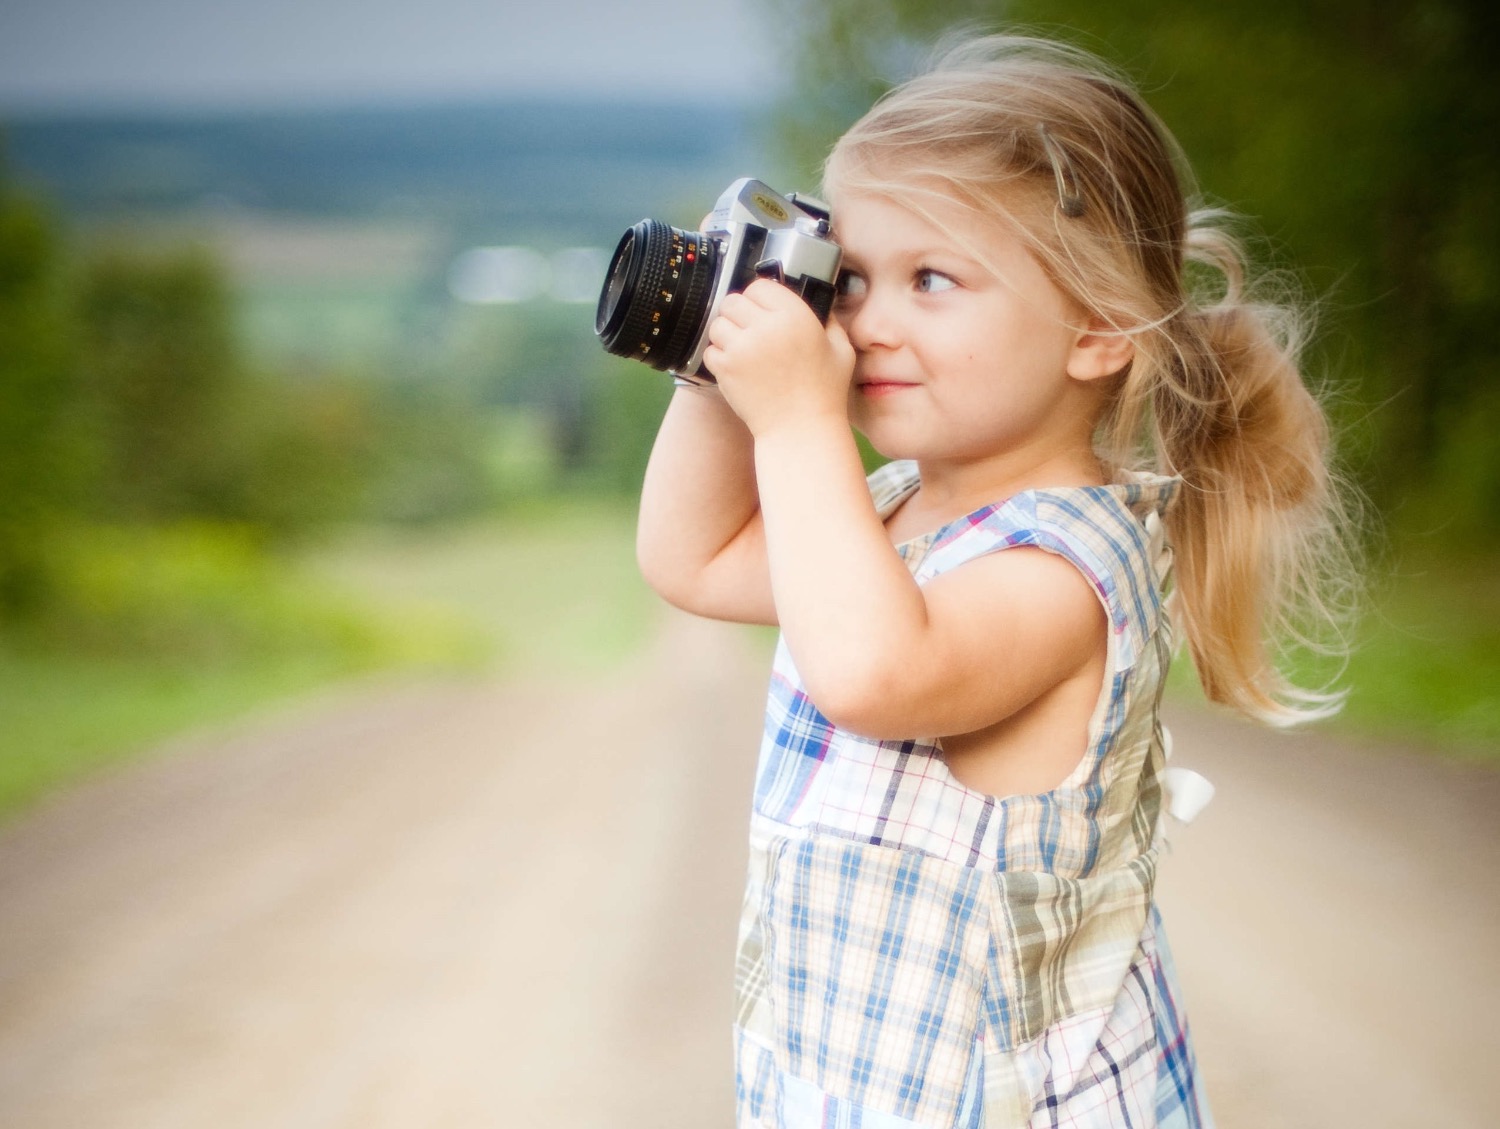 Titelbild zur Bastel- und DIY-Idee für Kinder '(31) Kinder fotografieren ihr zuhause'